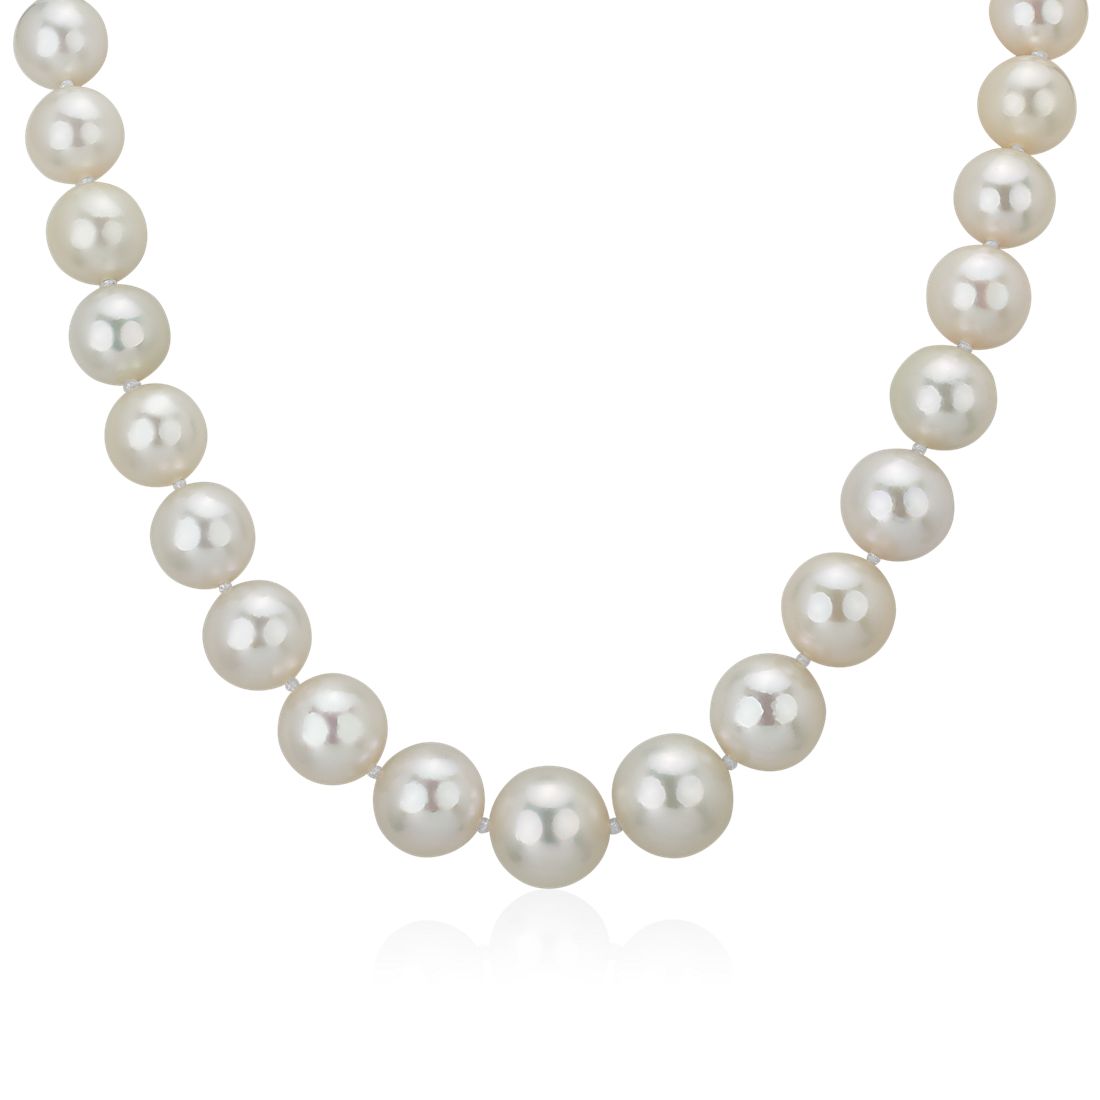 Collar con broche de diamantes y perlas del mar del sur graduadas de 10-12,6 mm